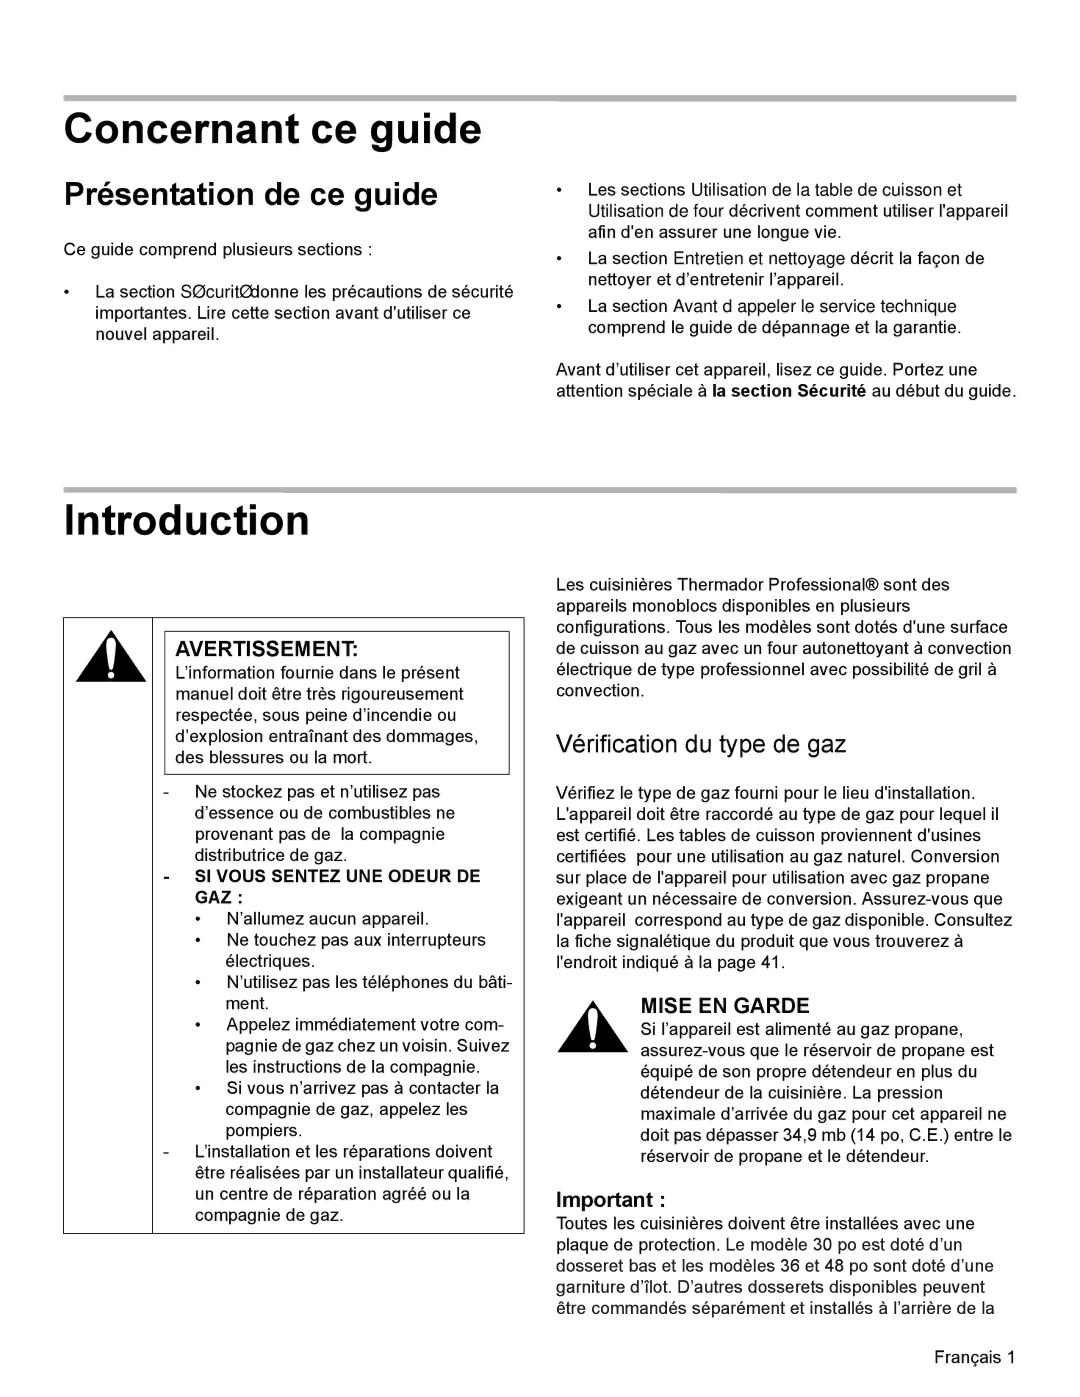 Thermador PRD48 Concernant ce guide, Présentation de ce guide, Vérification du type de gaz, Avertissement, Mise EN Garde 